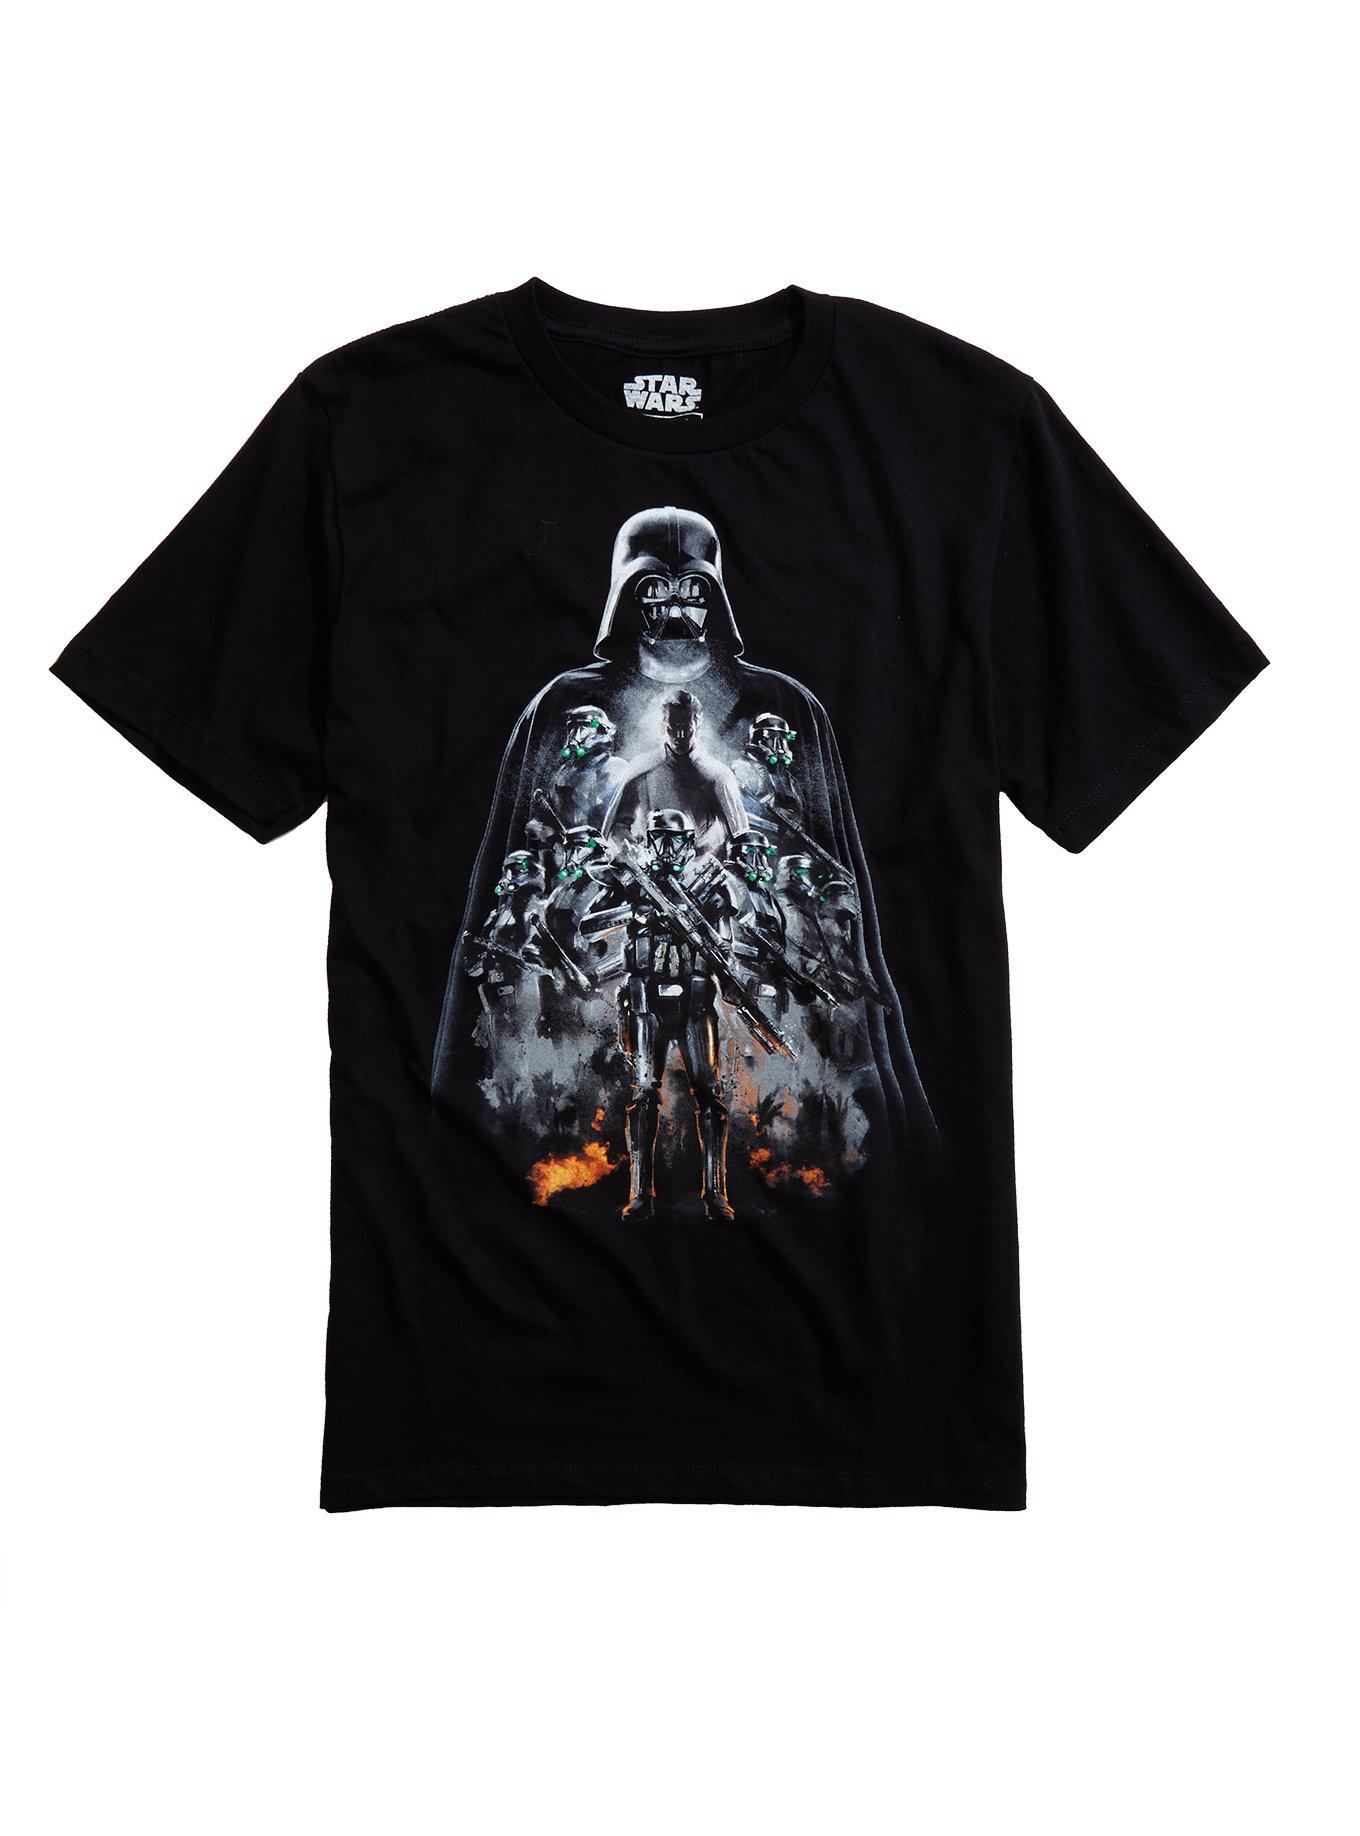 Star Wars Rogue One Darth Vader Group T-Shirt, BLACK, hi-res